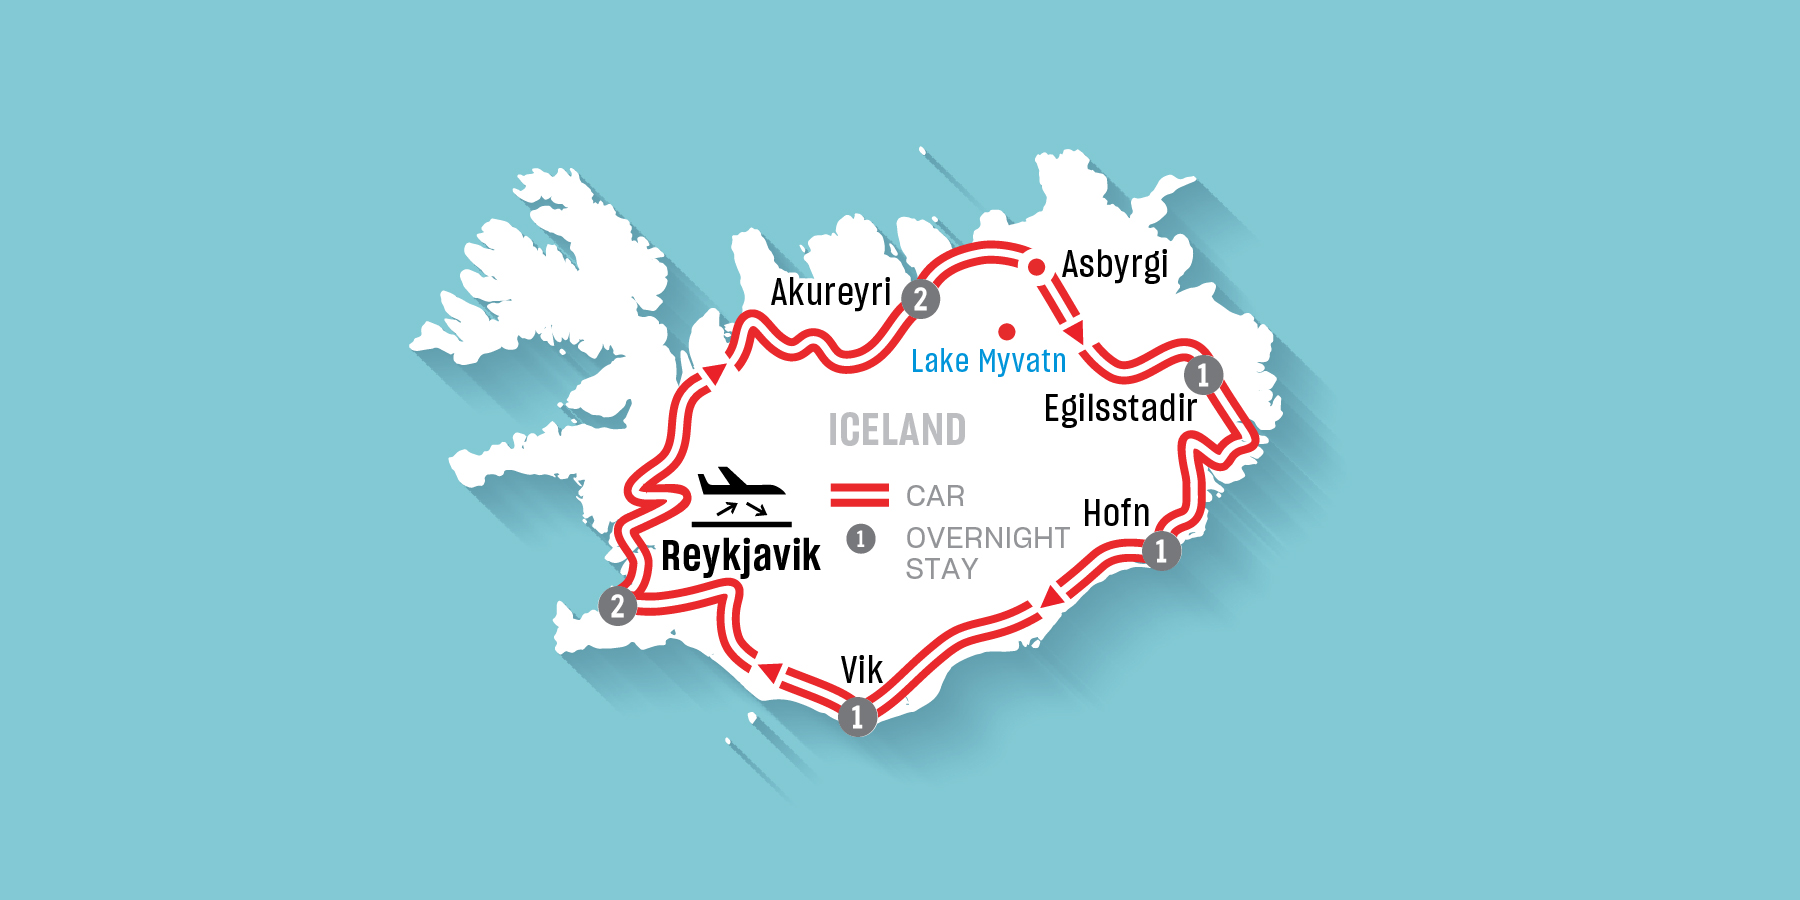 Around Iceland Map EN ?context=bWFzdGVyfHJvb3R8MzMyOTczfGltYWdlL2pwZWd8aDU0L2g1MS84ODEyODMwMDk3NDM4LmpwZ3xmMGMzYzQ4ZTc5NzNkZDU4ODc1NjM5NjJmNDBhODY4MzZlY2U2NTcxMjc1M2QxMDk0YzI3M2RhMjAzY2ZiYjQ2